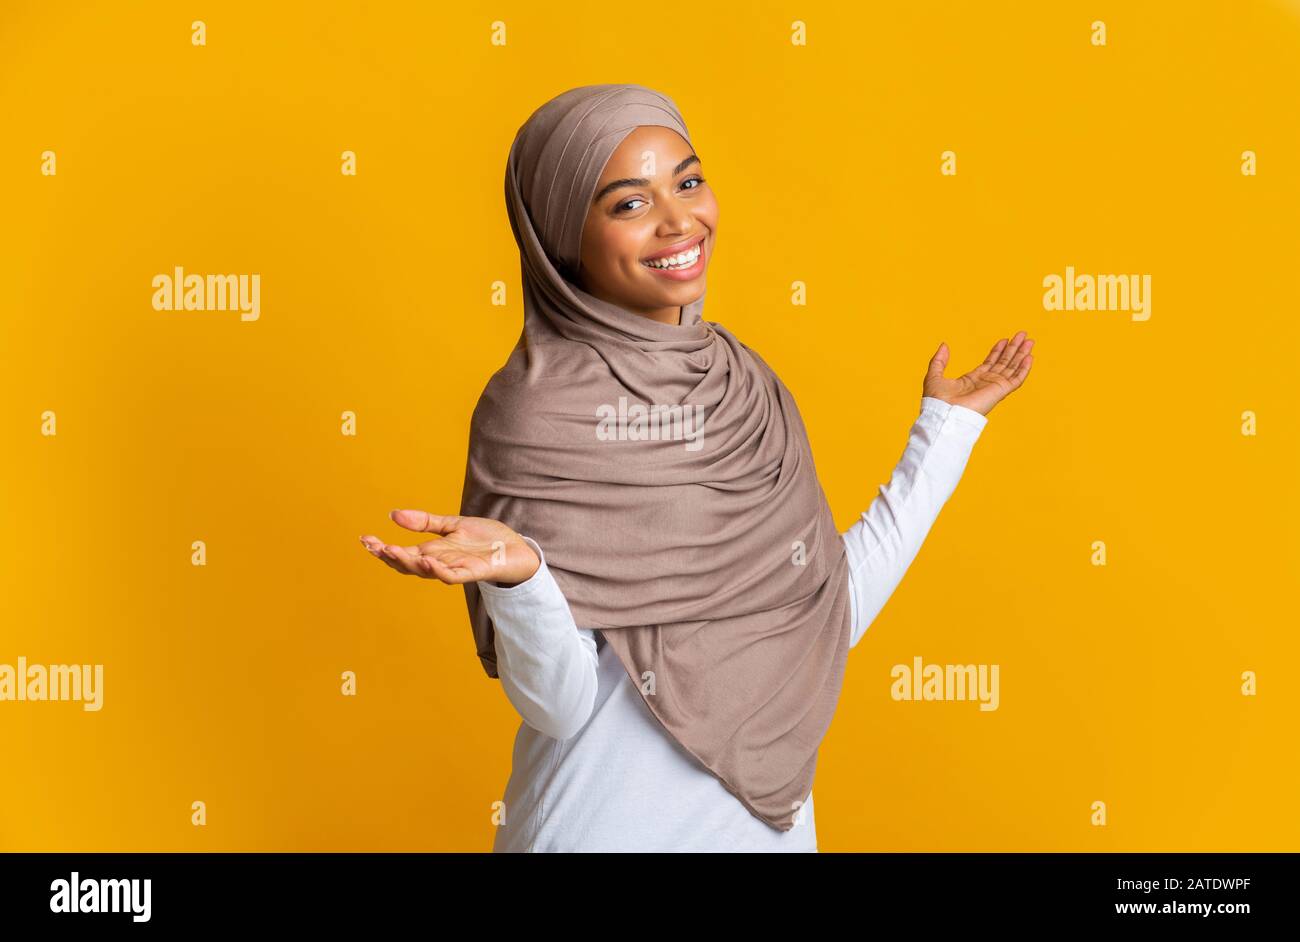 Ritratto di spensierata ragazza islamica afro in velo con braccia spalmate Foto Stock